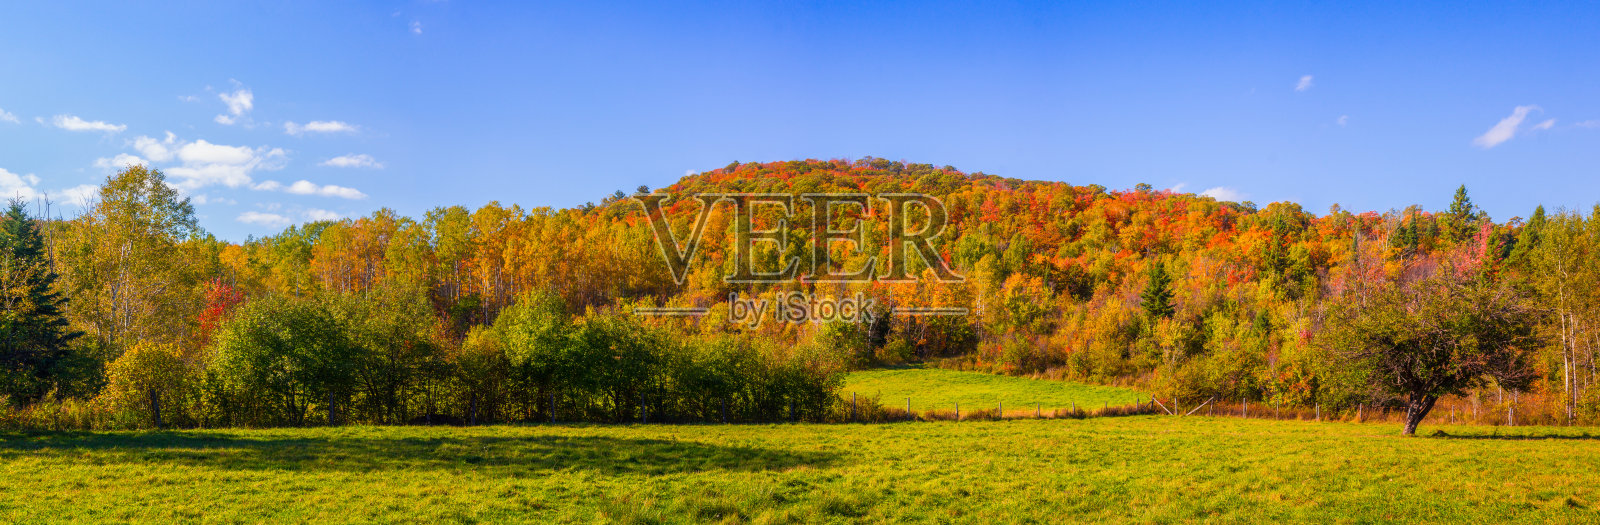 全景-秋天的风景-田野与山在背景照片摄影图片